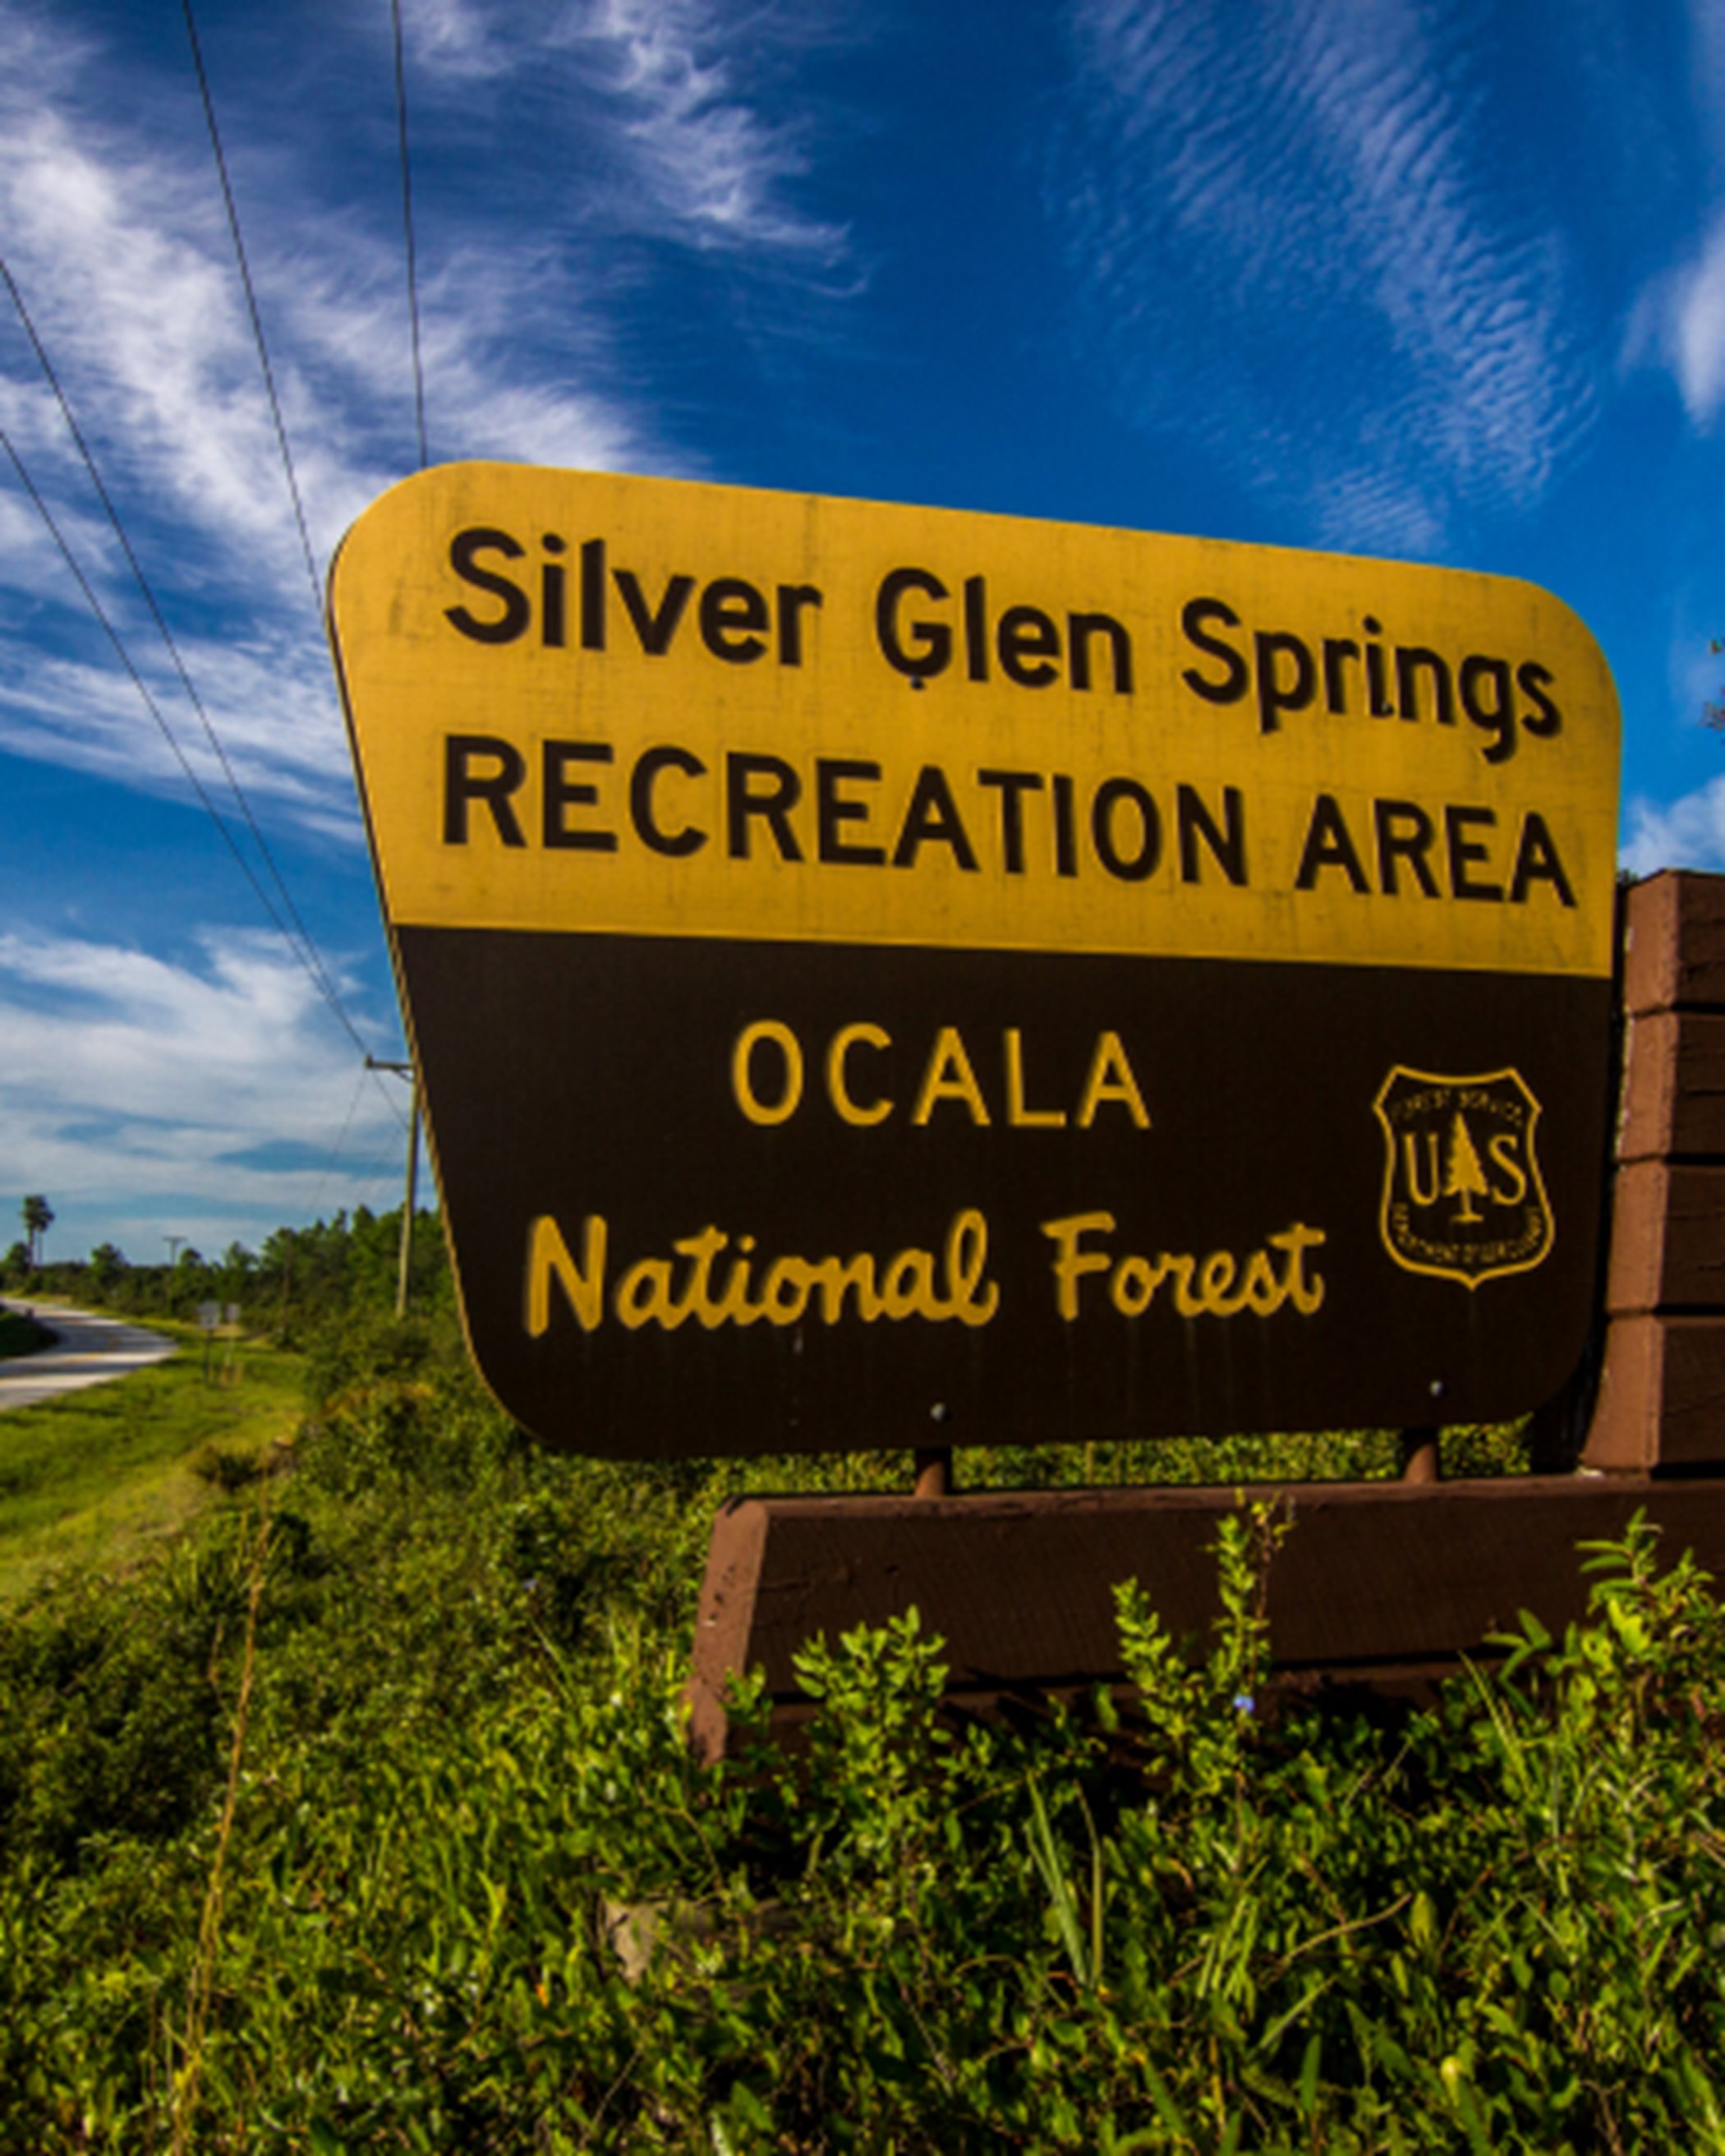 Silver Glen Springs Recreation Area